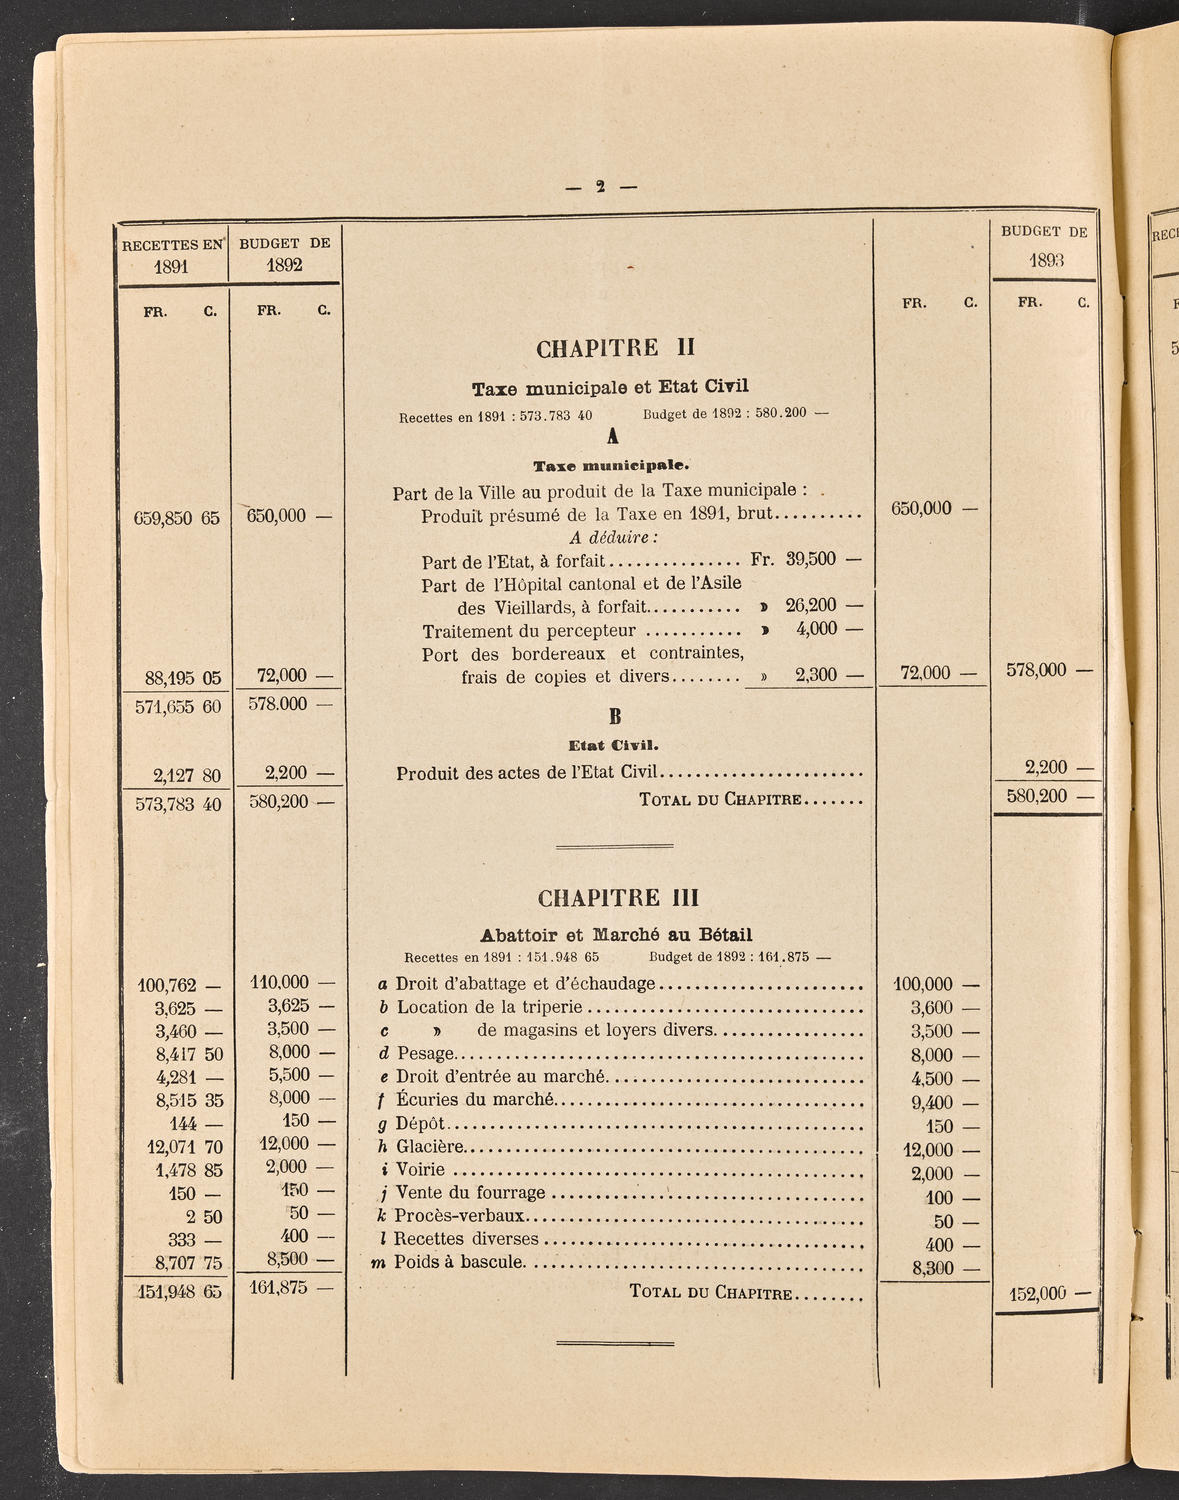 Budget de la Ville de Genève - Exercise de 1893, page 8 of 32